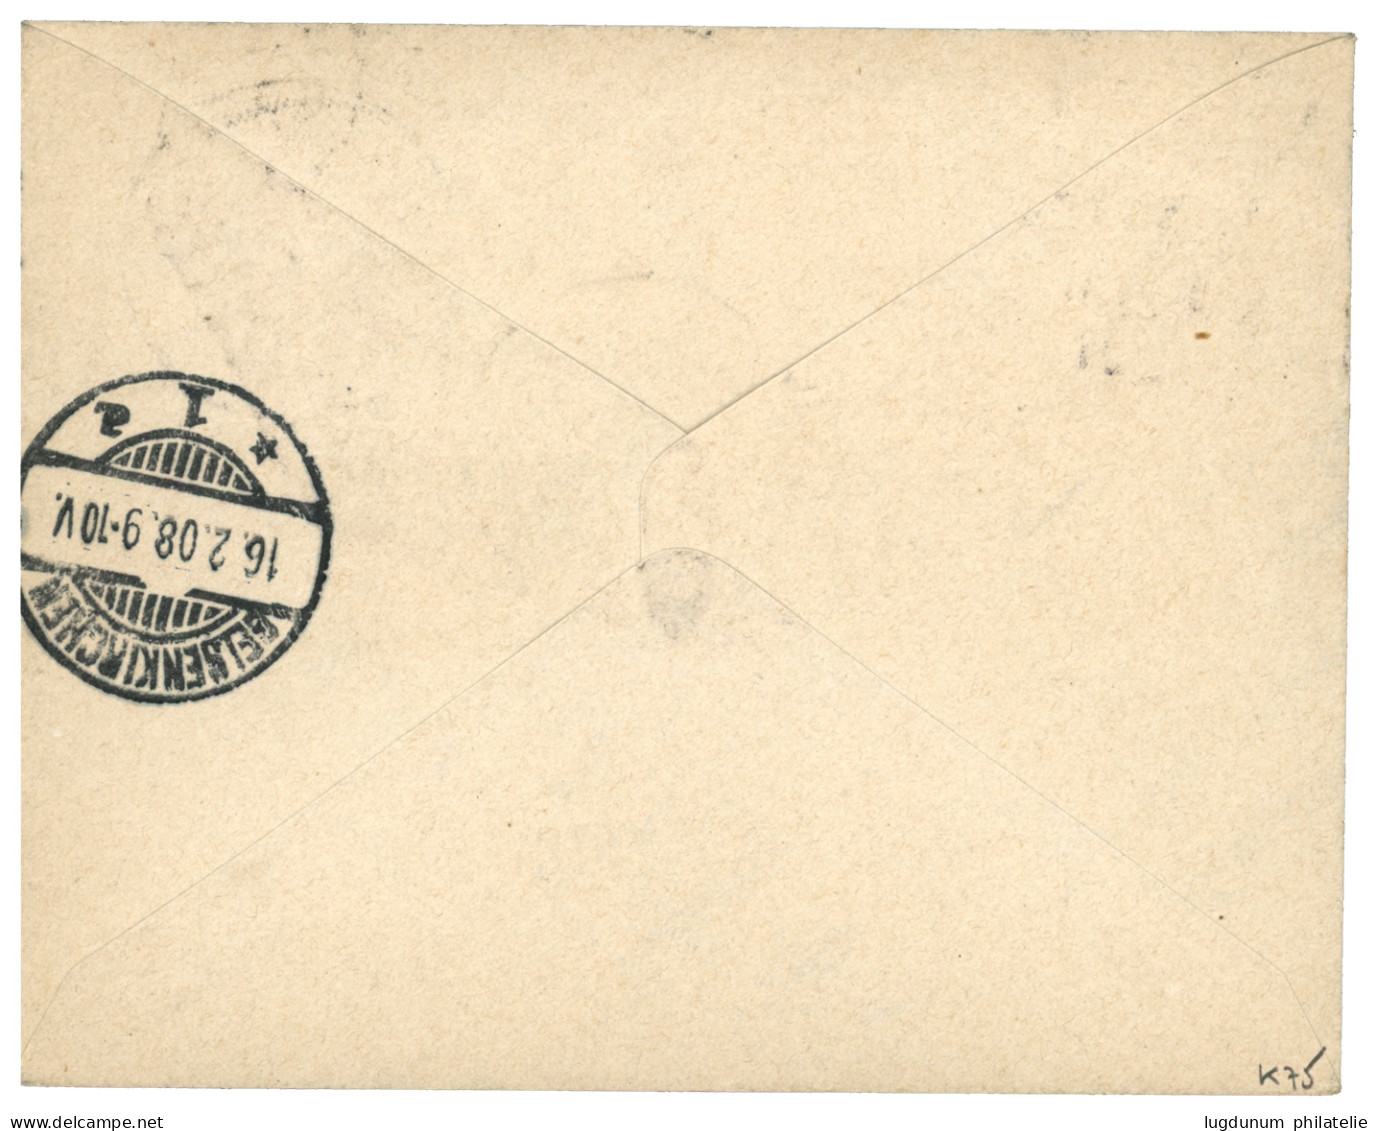 DSWA - KONDOA-IRANGI : 1907 20h Canc. KONDA-IRANGI On REGISTERED Envelope To GERMANY. Luxus. - Africa Tedesca Del Sud-Ovest